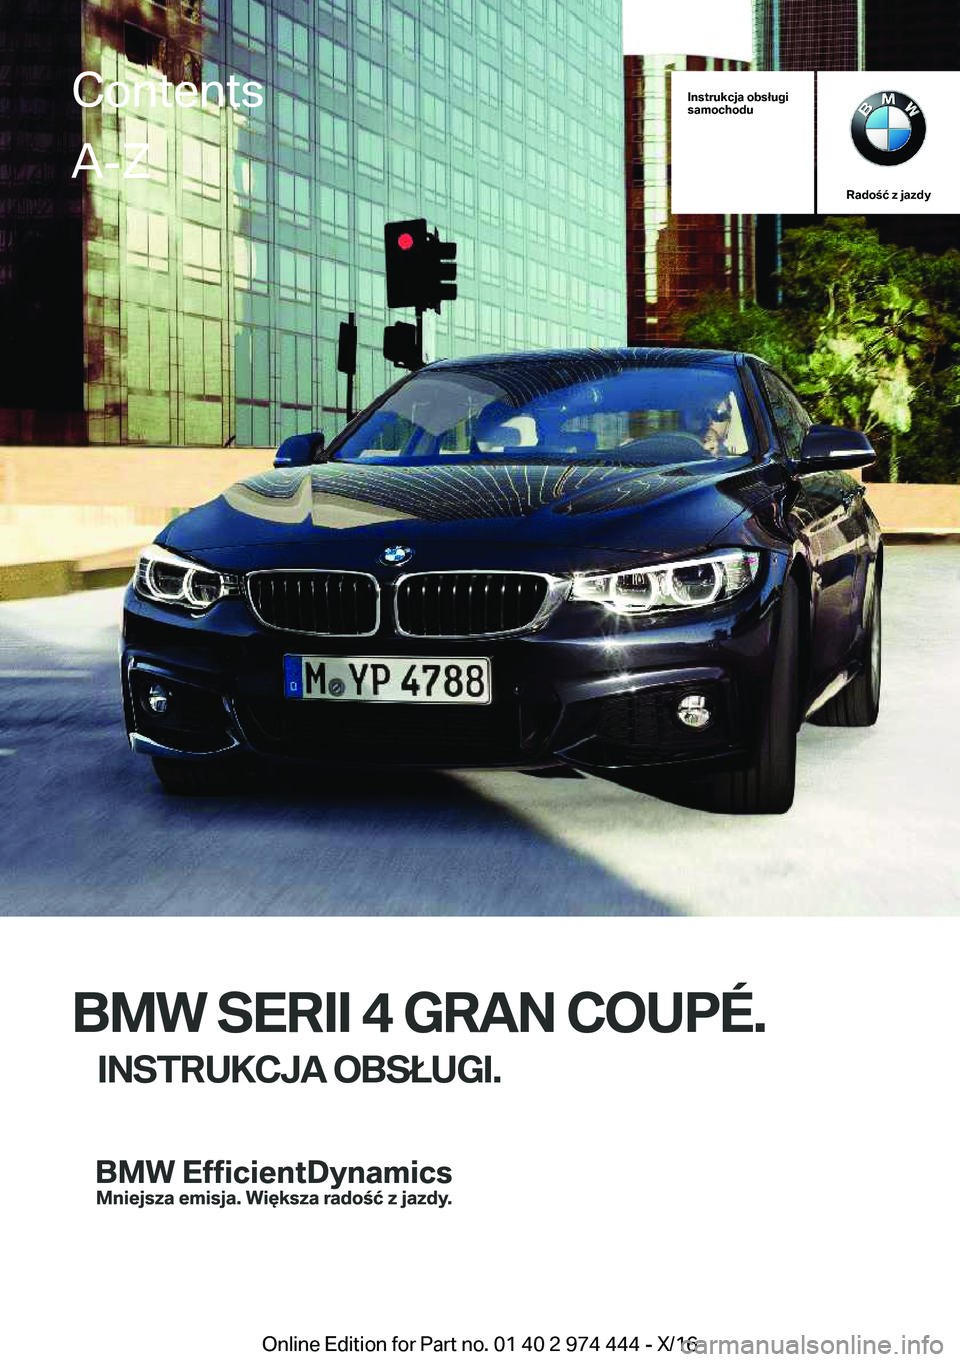 BMW 4 SERIES GRAN COUPE 2017  Instrukcja obsługi (in Polish) �I�n�s�t�r�u�k�c�j�a��o�b�s�ł�u�g�i
�s�a�m�o�c�h�o�d�u
�R�a�d�o�